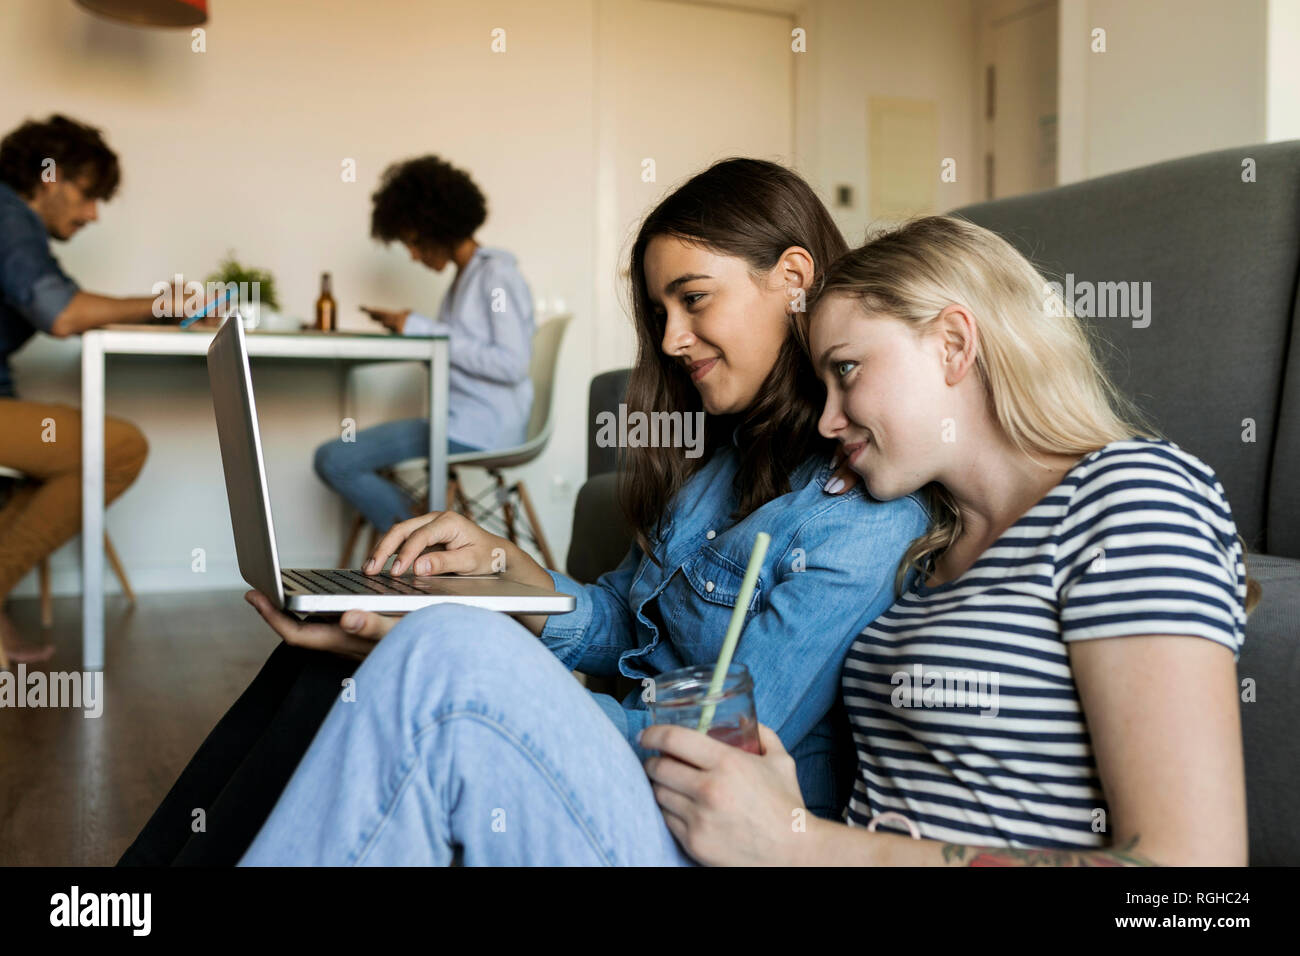 Zwei lächelnde junge Frauen sitzen auf dem Boden teilen Laptop mit Freunden im Hintergrund Stockfoto